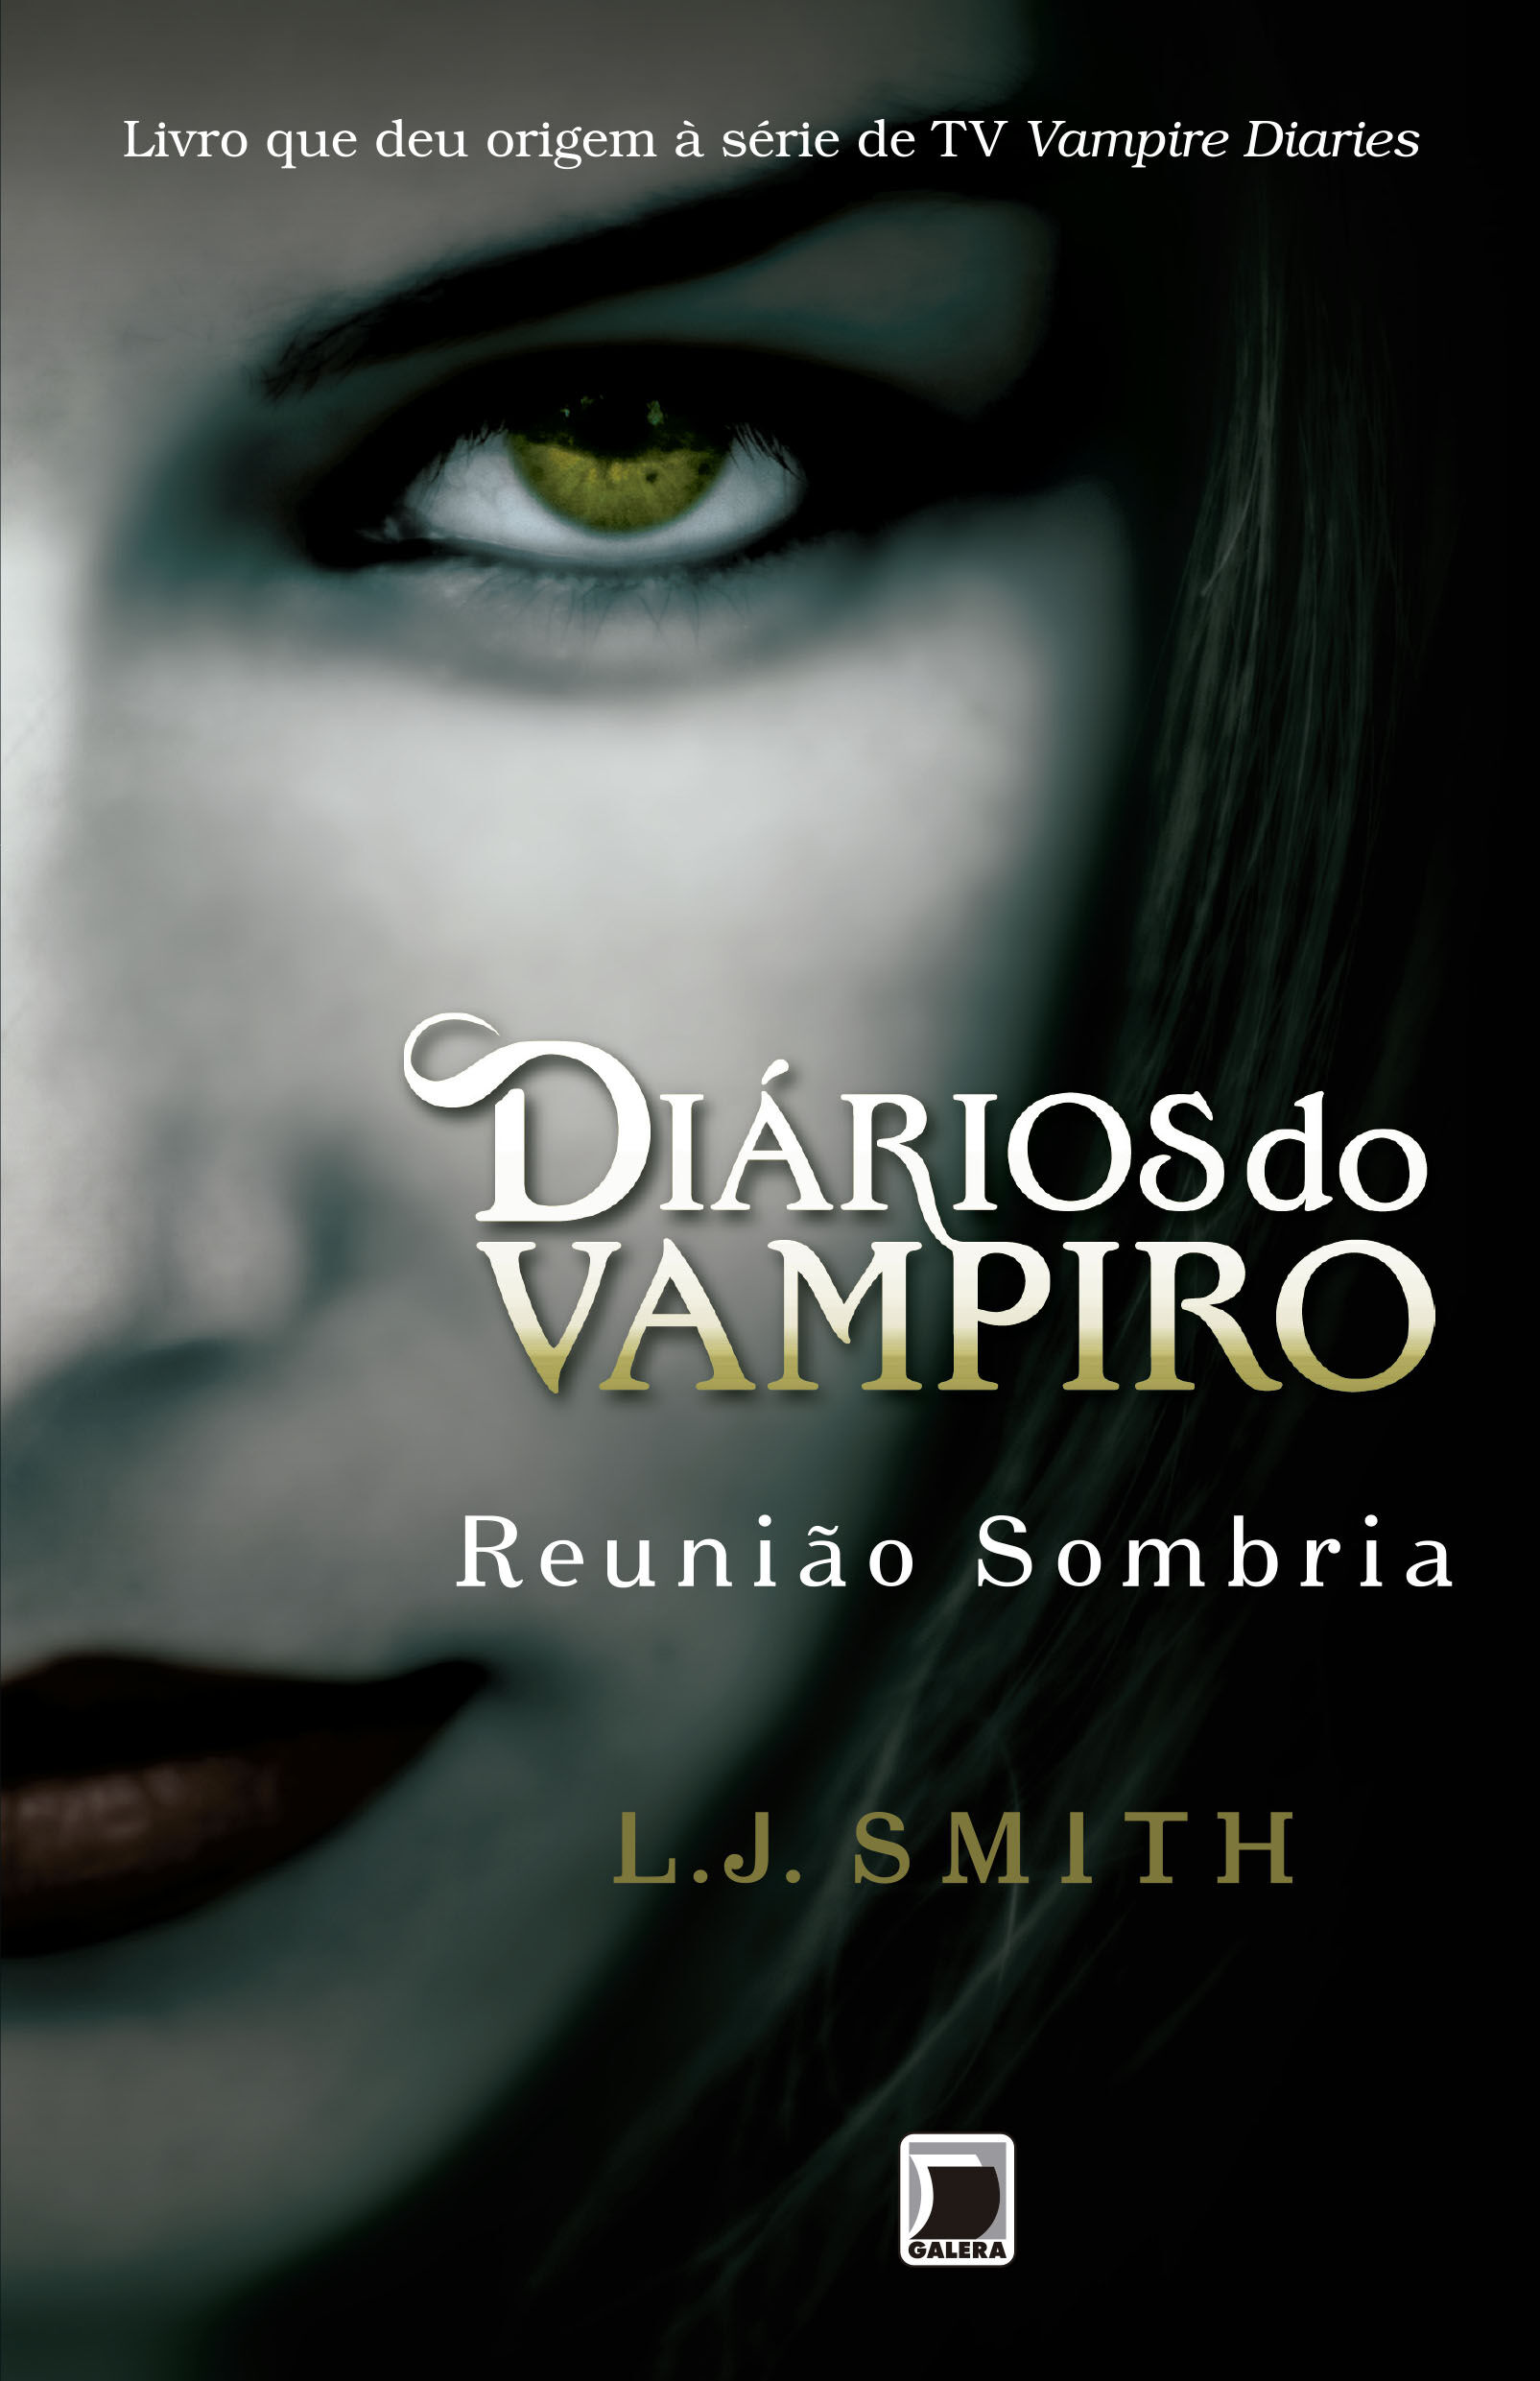 The Vampire Diaries (Diários do Vampiro): Livros VS. Série de TV